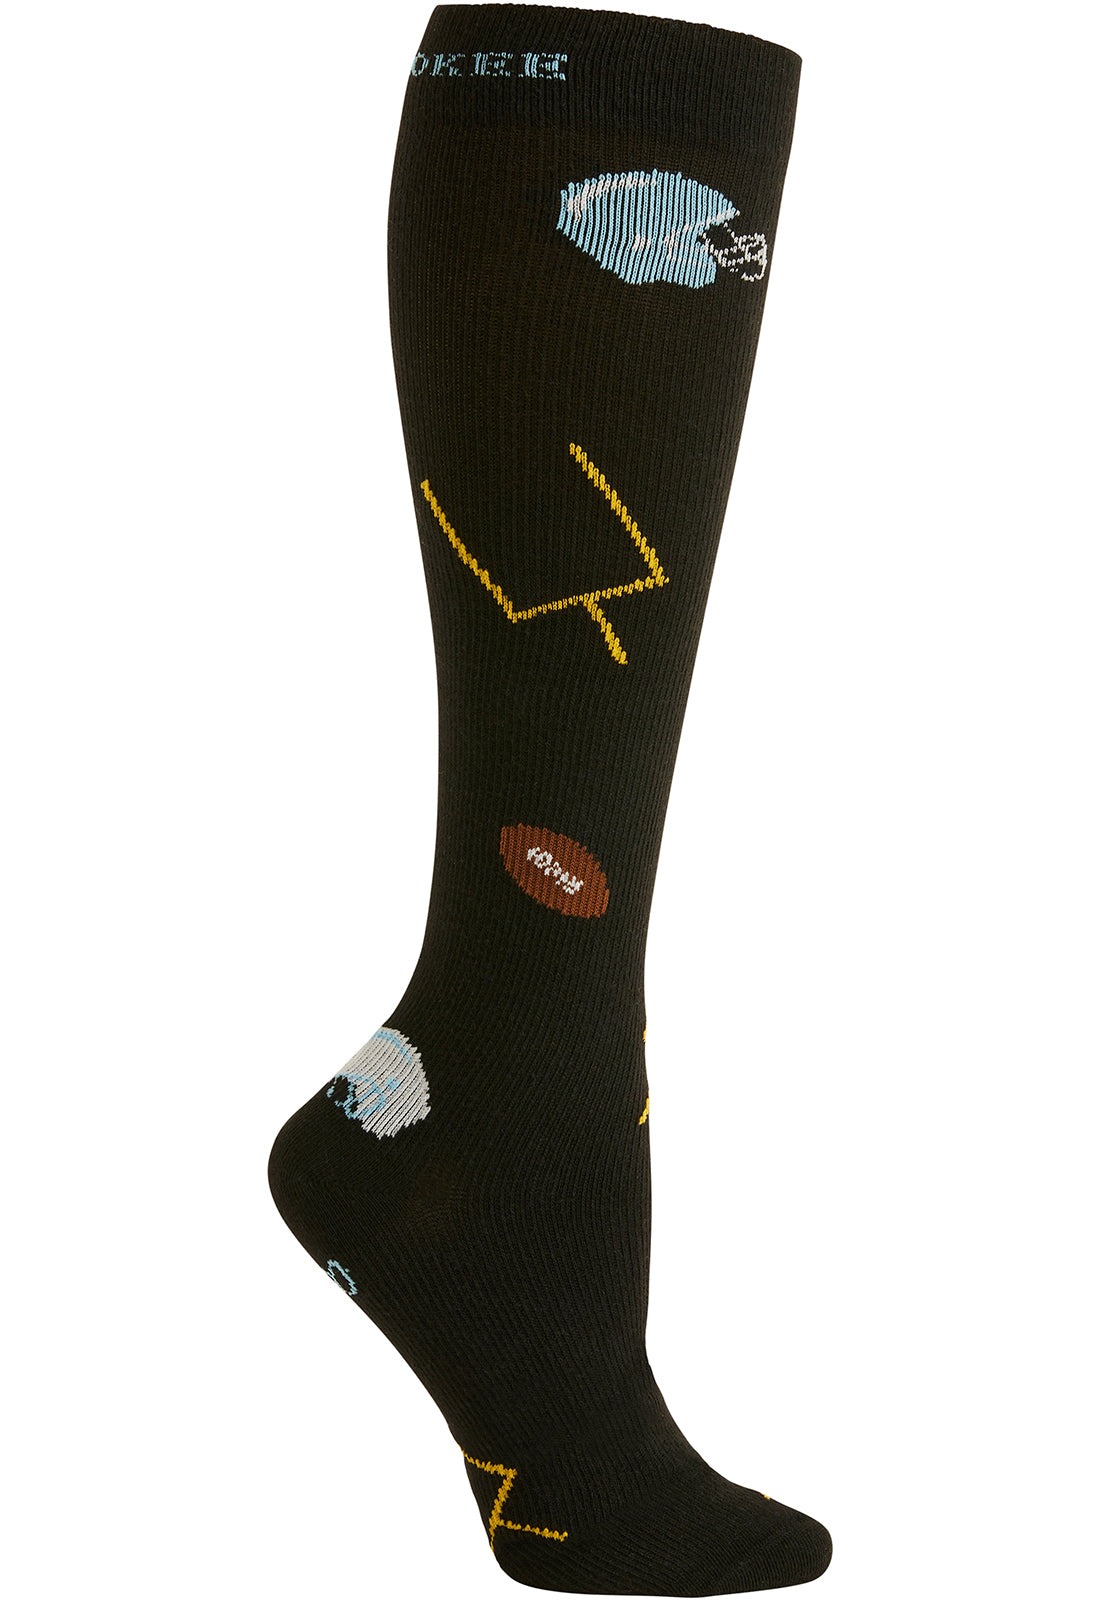 Men's 10-15mmHg Compression Socks Men's Compression Socks Cherokee Legwear Football Fun  